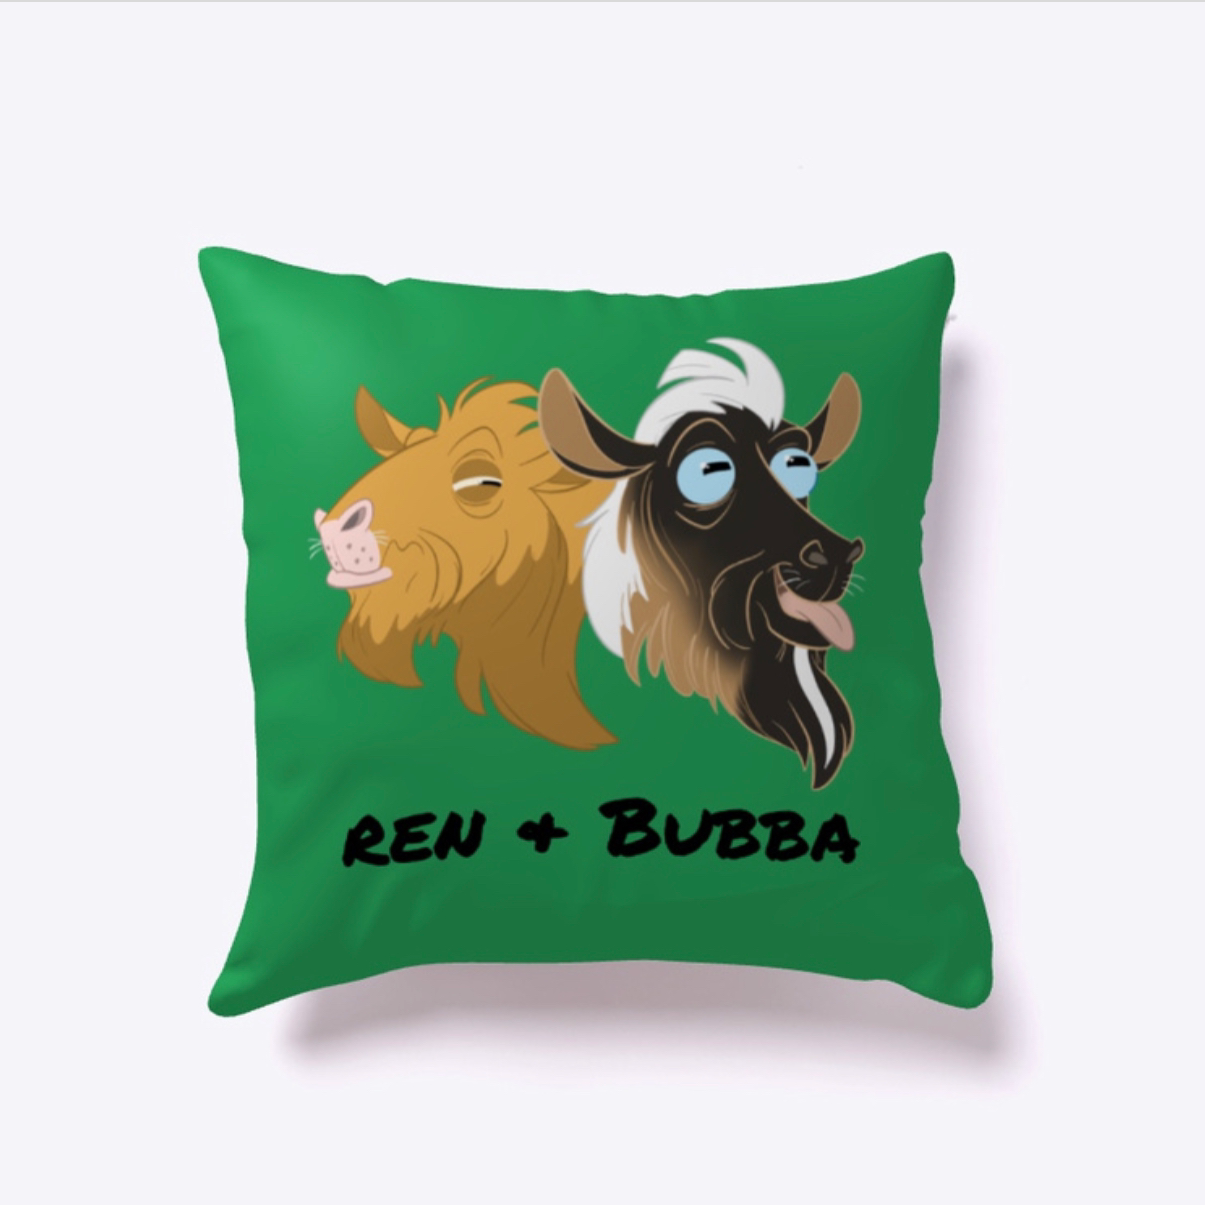 Bubba & Ren Throw Pillow